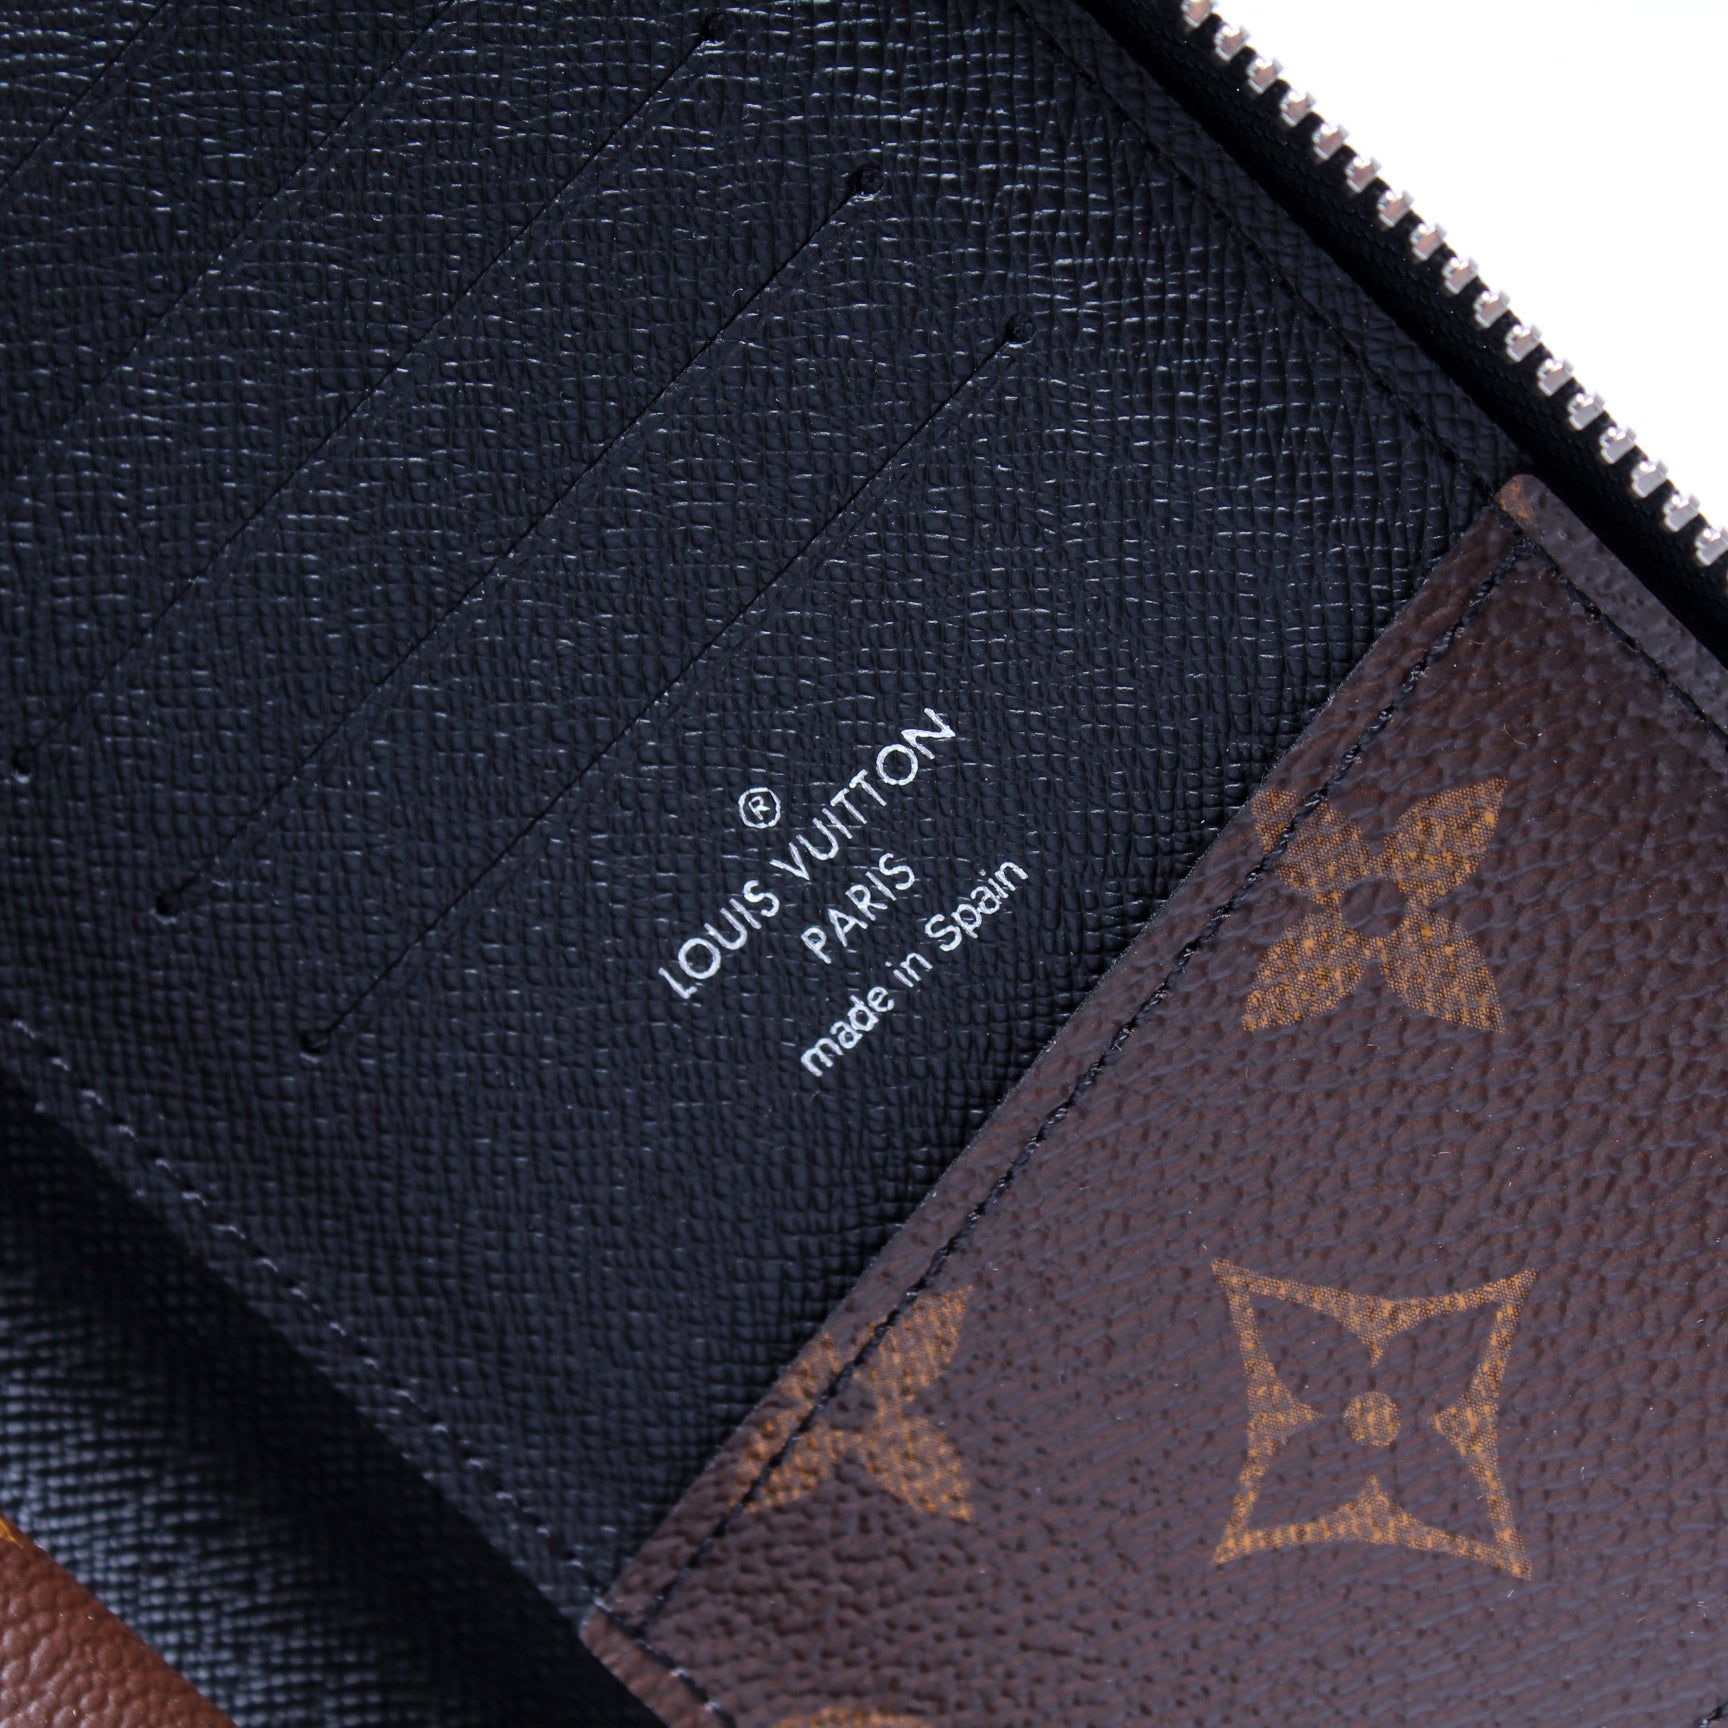 Louis Vuitton Round Long Wallet Monogram Macassar Zippy Vertical